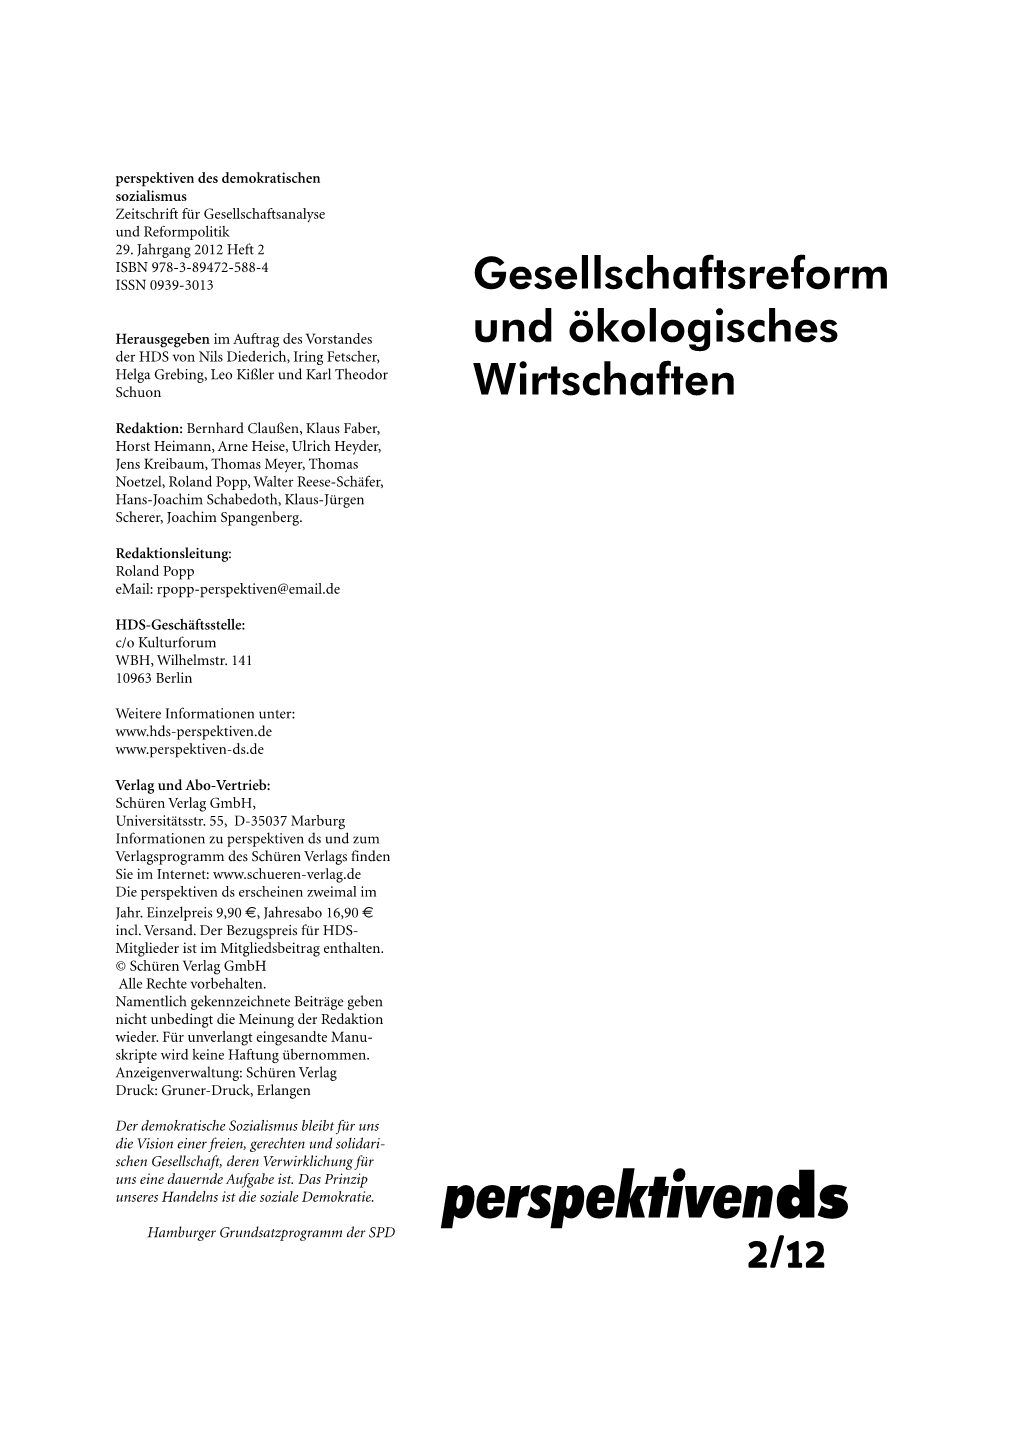 Perspektivends Hamburger Grundsatzprogramm Der SPD 2/12 Inhalt Eckart Kuhlwein Die SPD Und Die Nachhaltigkeit 101